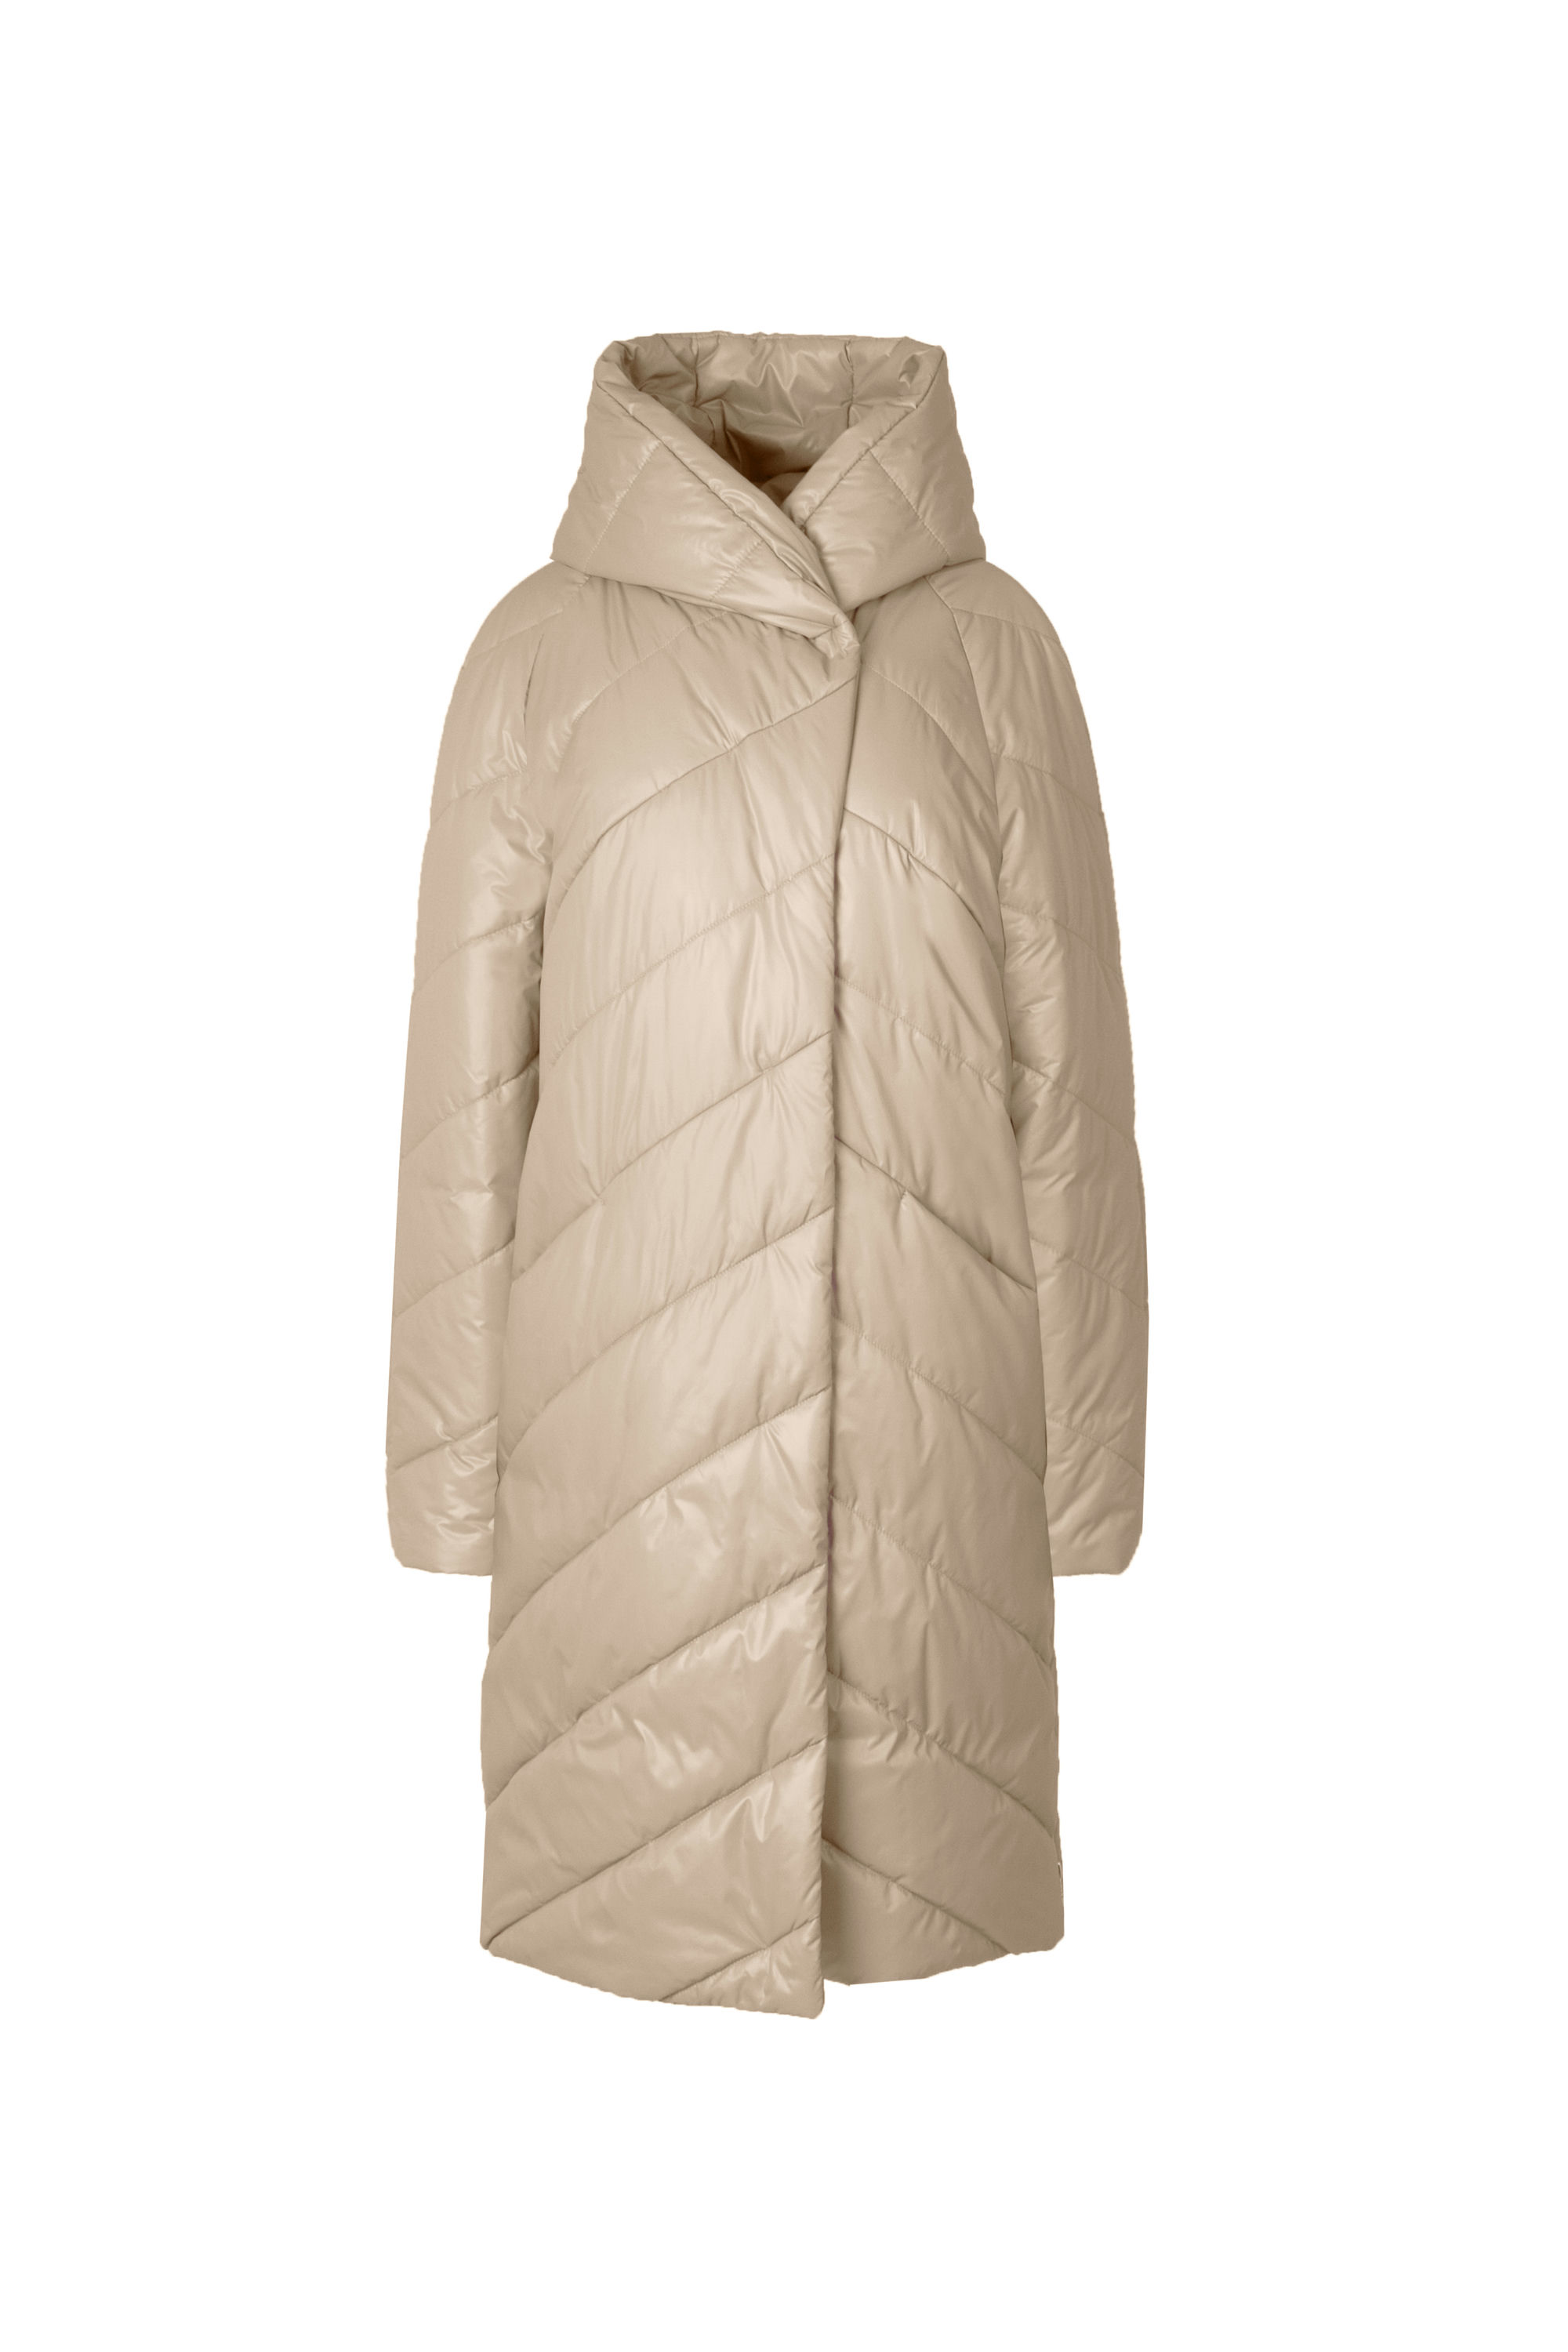 Пальто женское плащевое утепленное 5-12649-1. Фото 1.